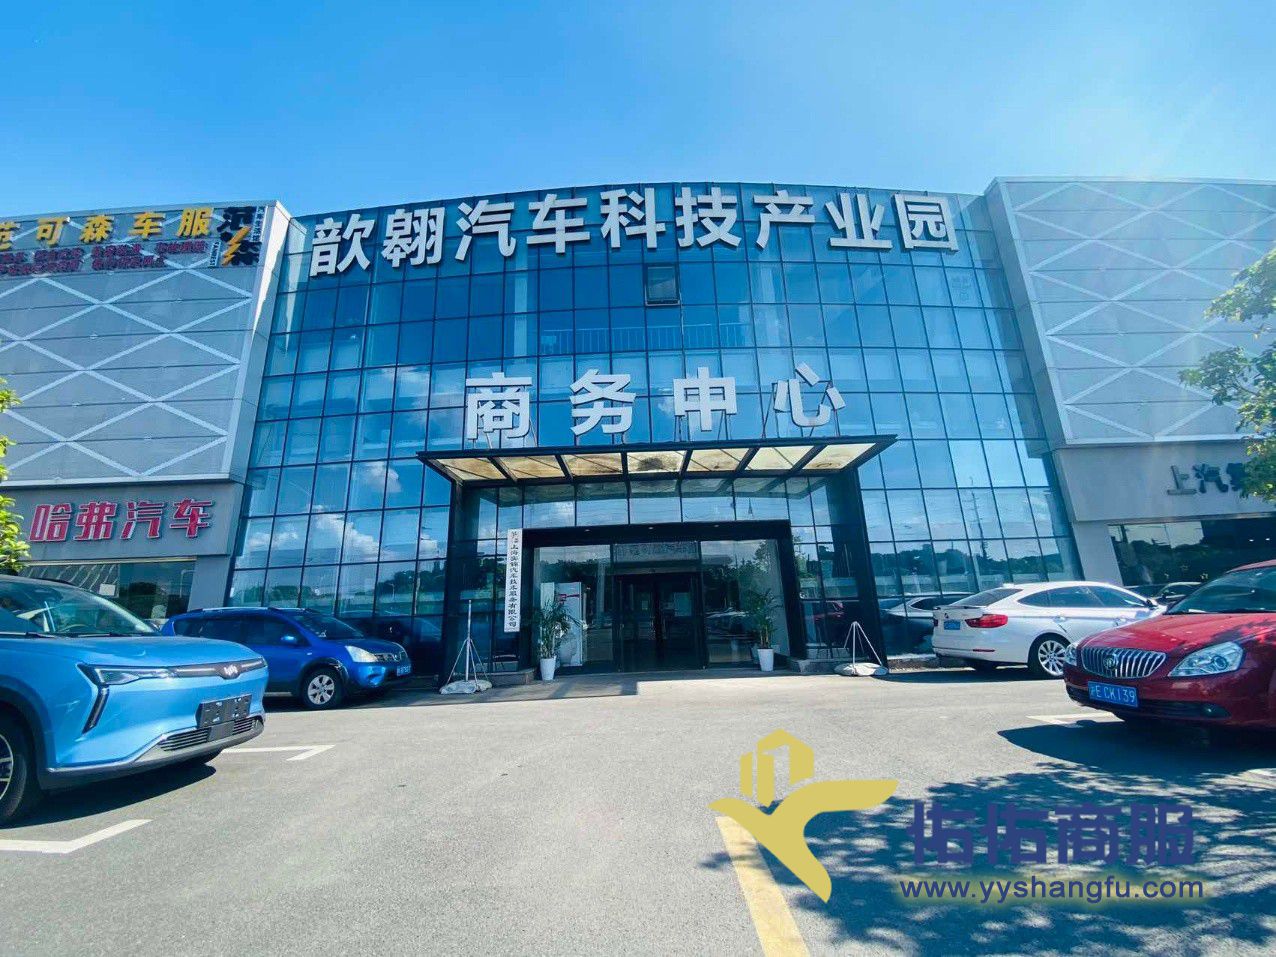 青浦区沪青平公路附近。一楼层高8米。招租汽车展厅维修等行业